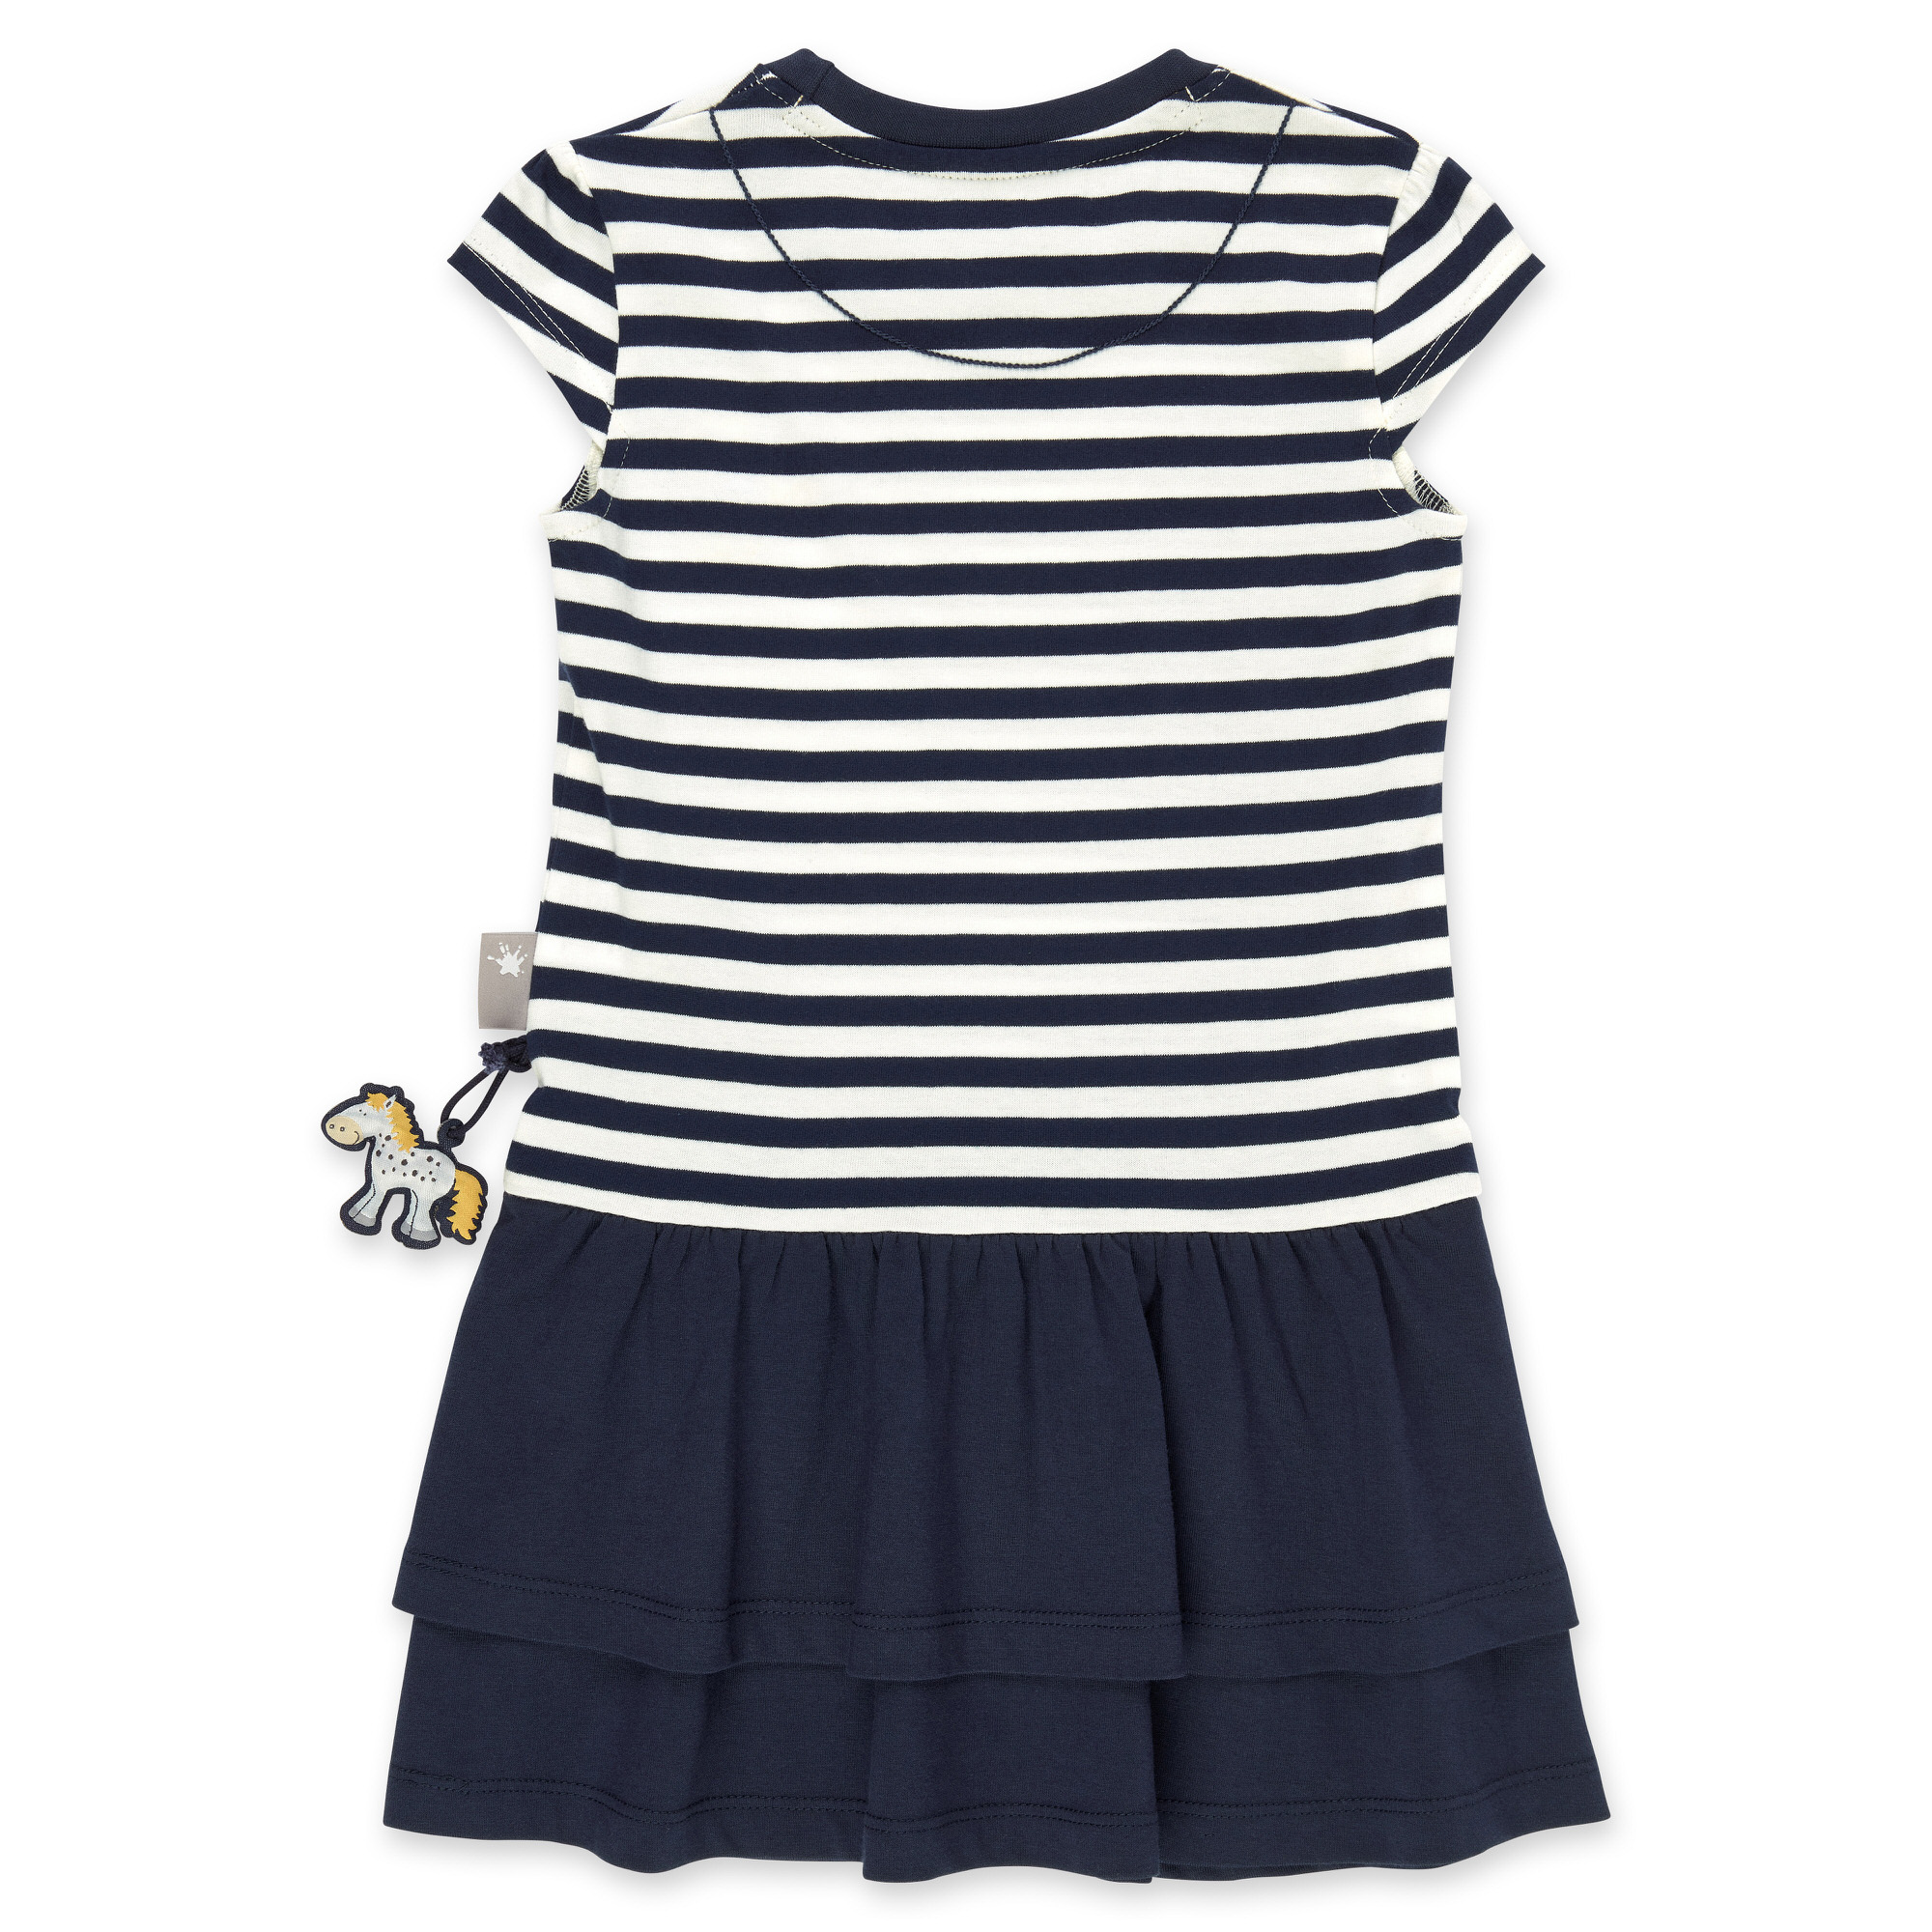 Twofer girls' summer flounce dress, navy/white